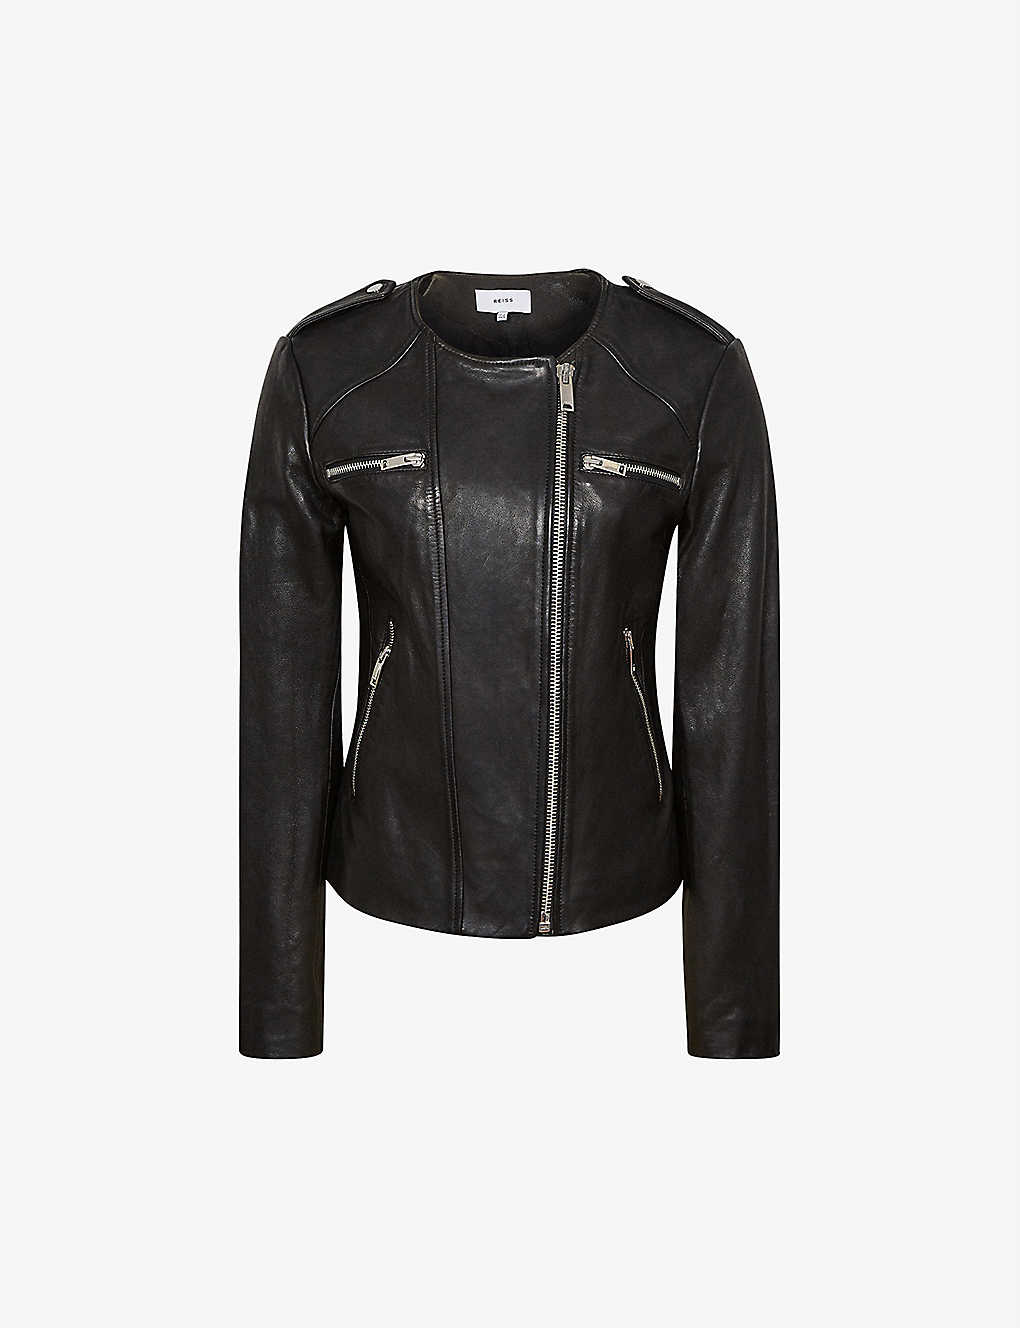 Women’s Crew Neck Black Leather Jacket